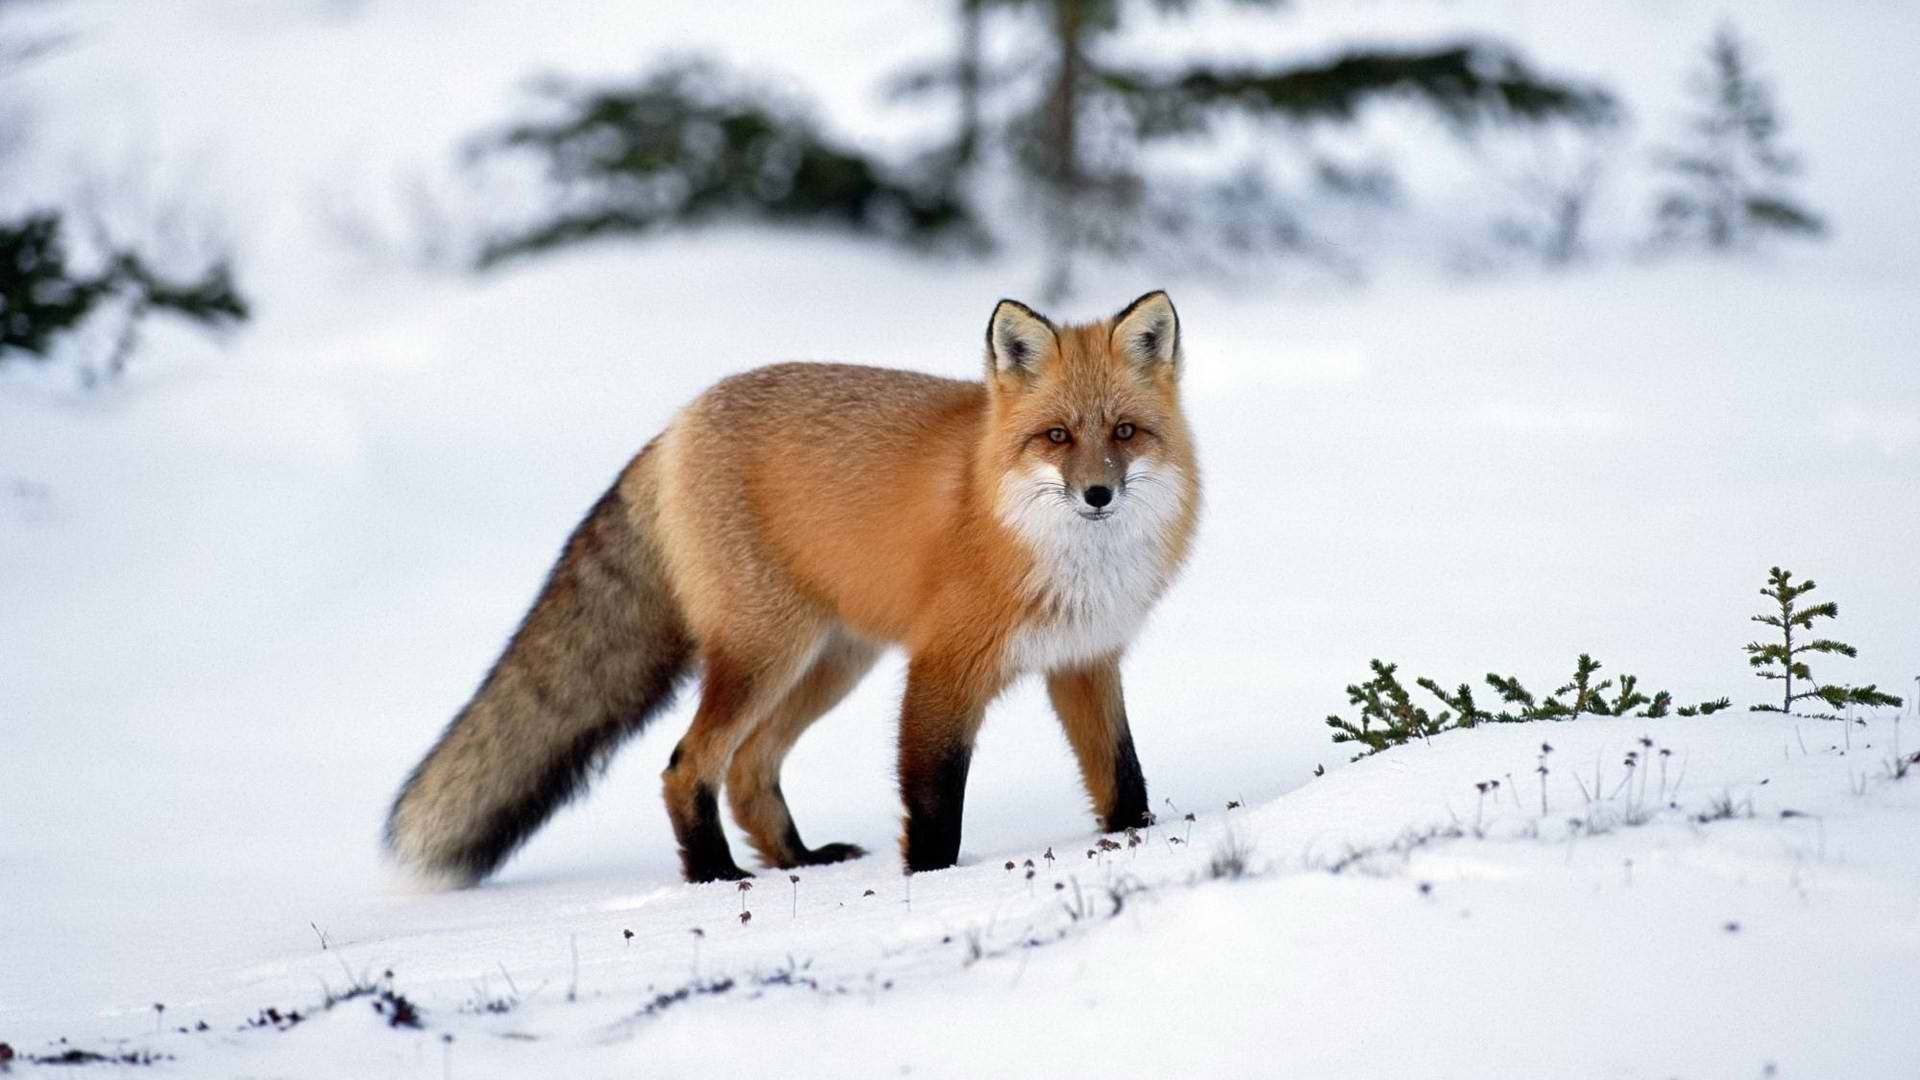 Cute Kawaii Fox On Snow Background